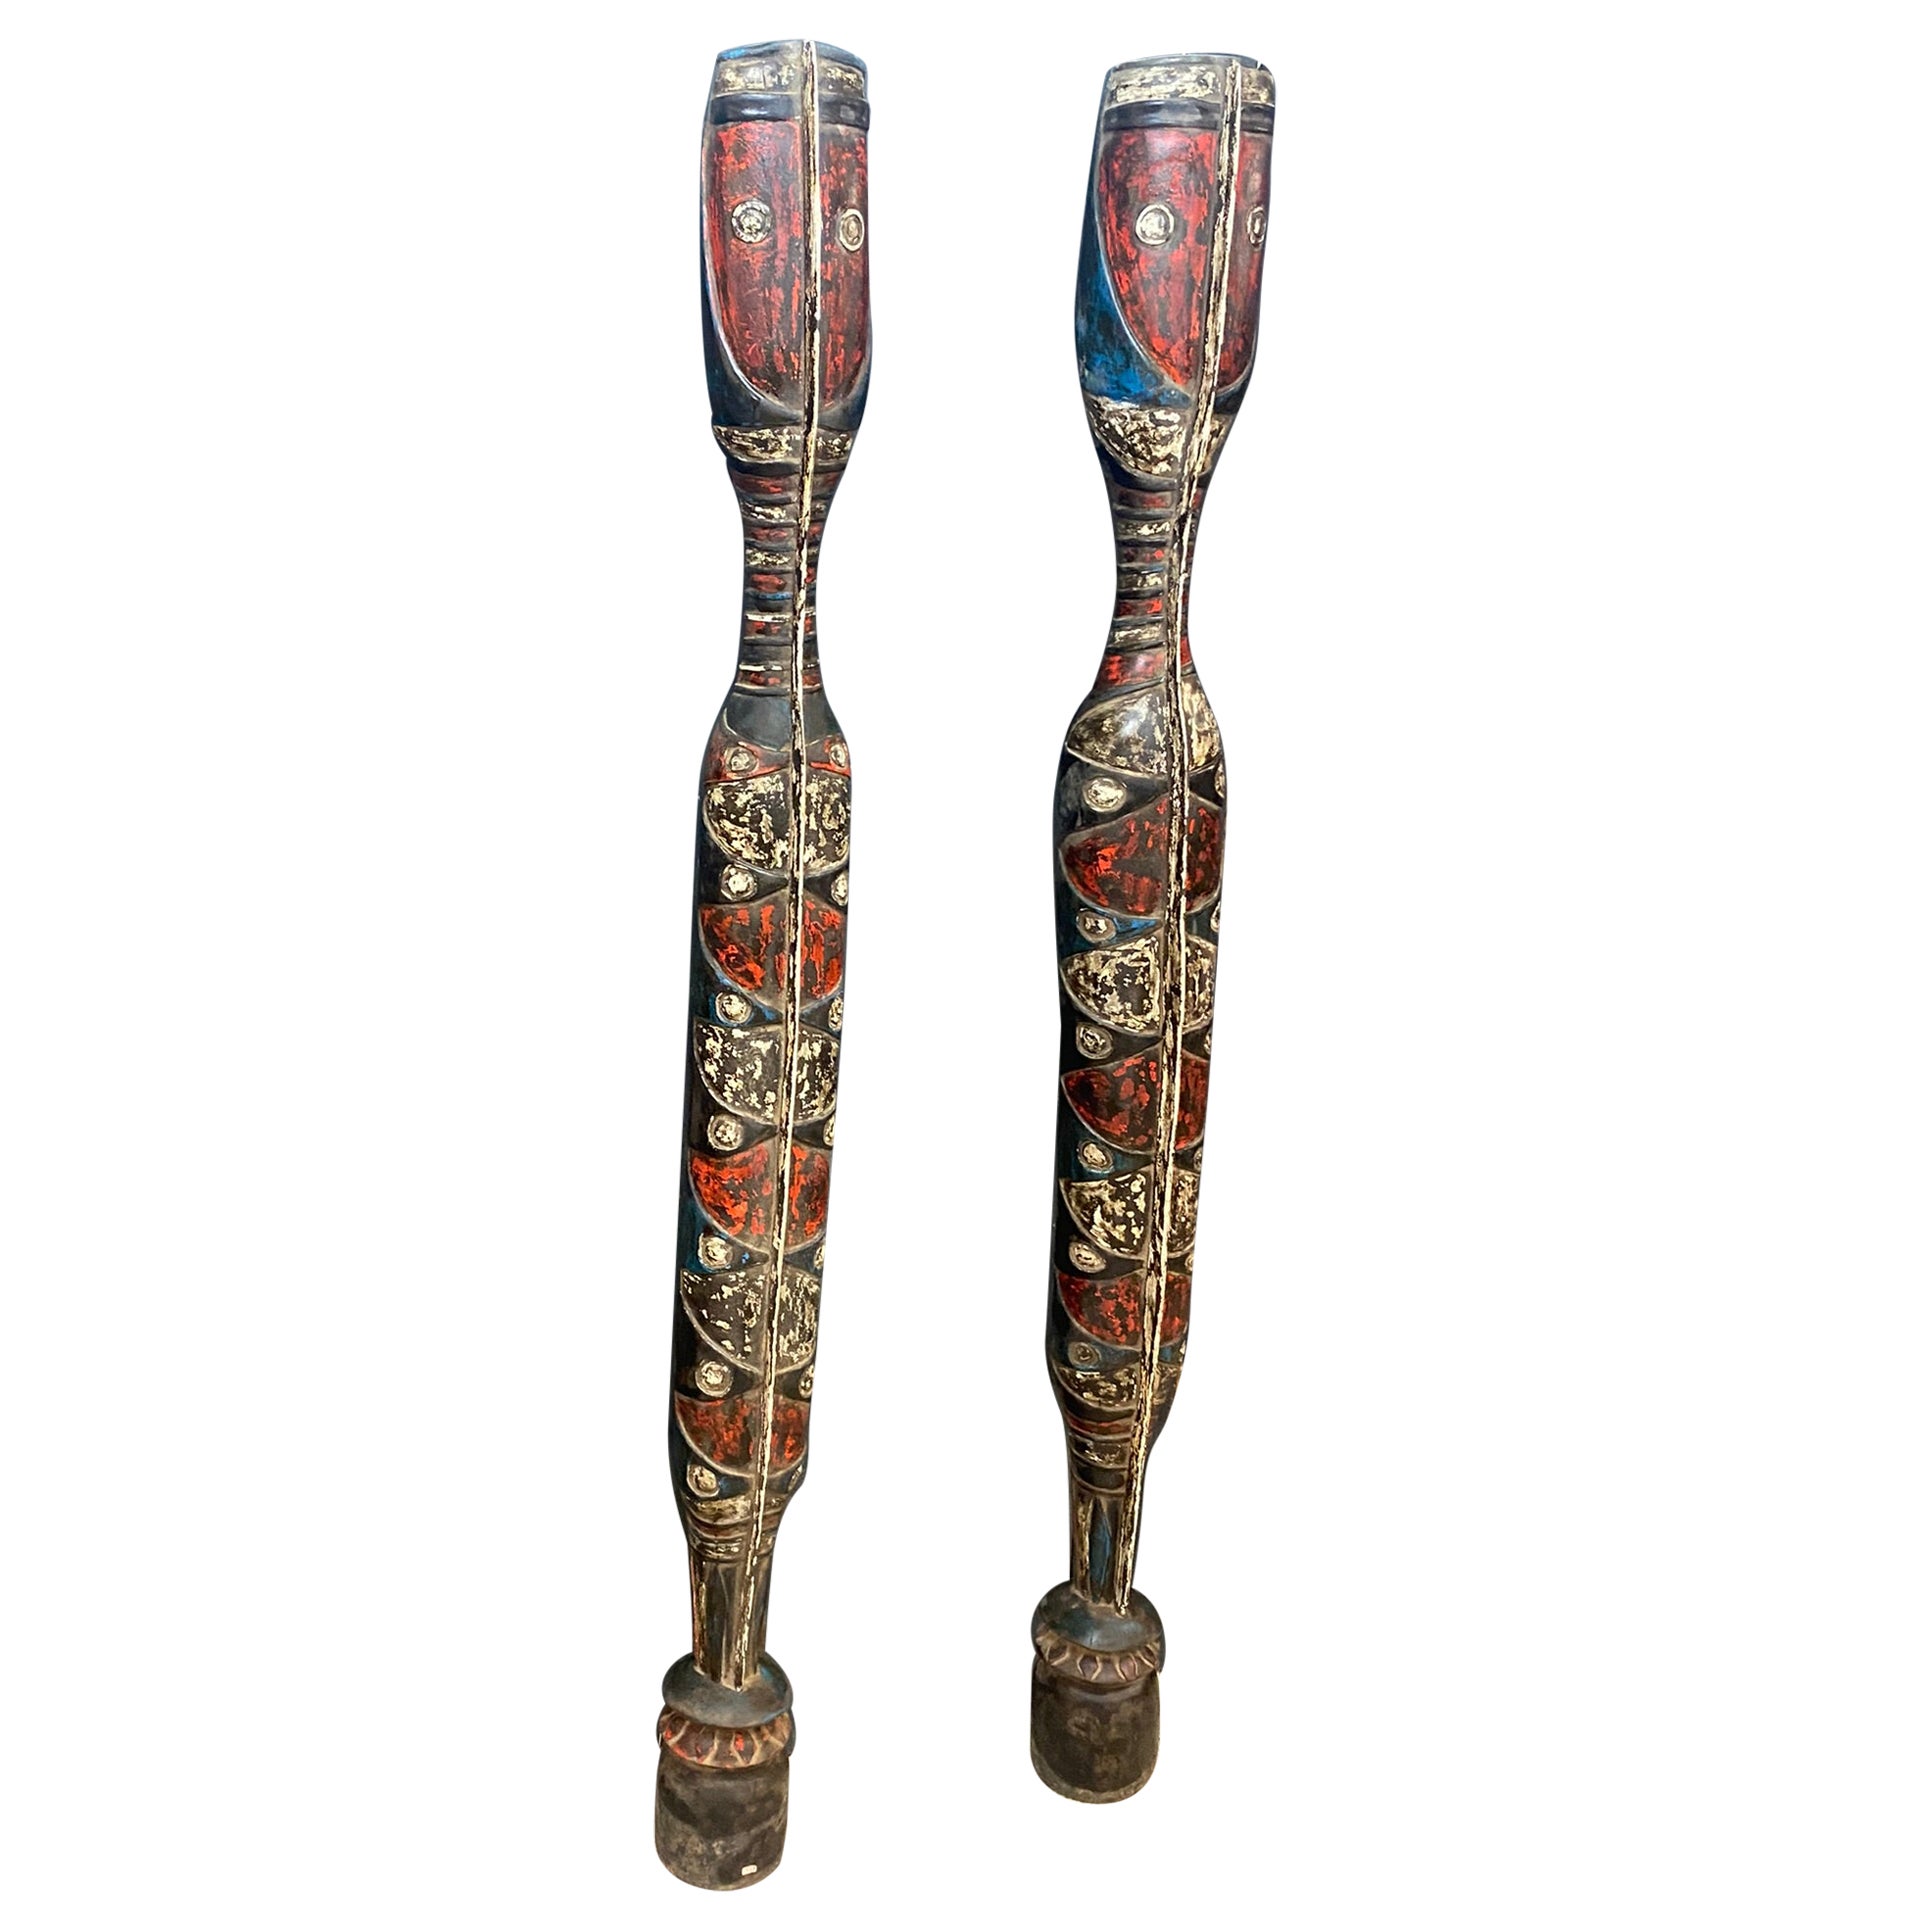 Afrique, 2 éléments décoratifs en bois polychrome, datant d'environ 1950